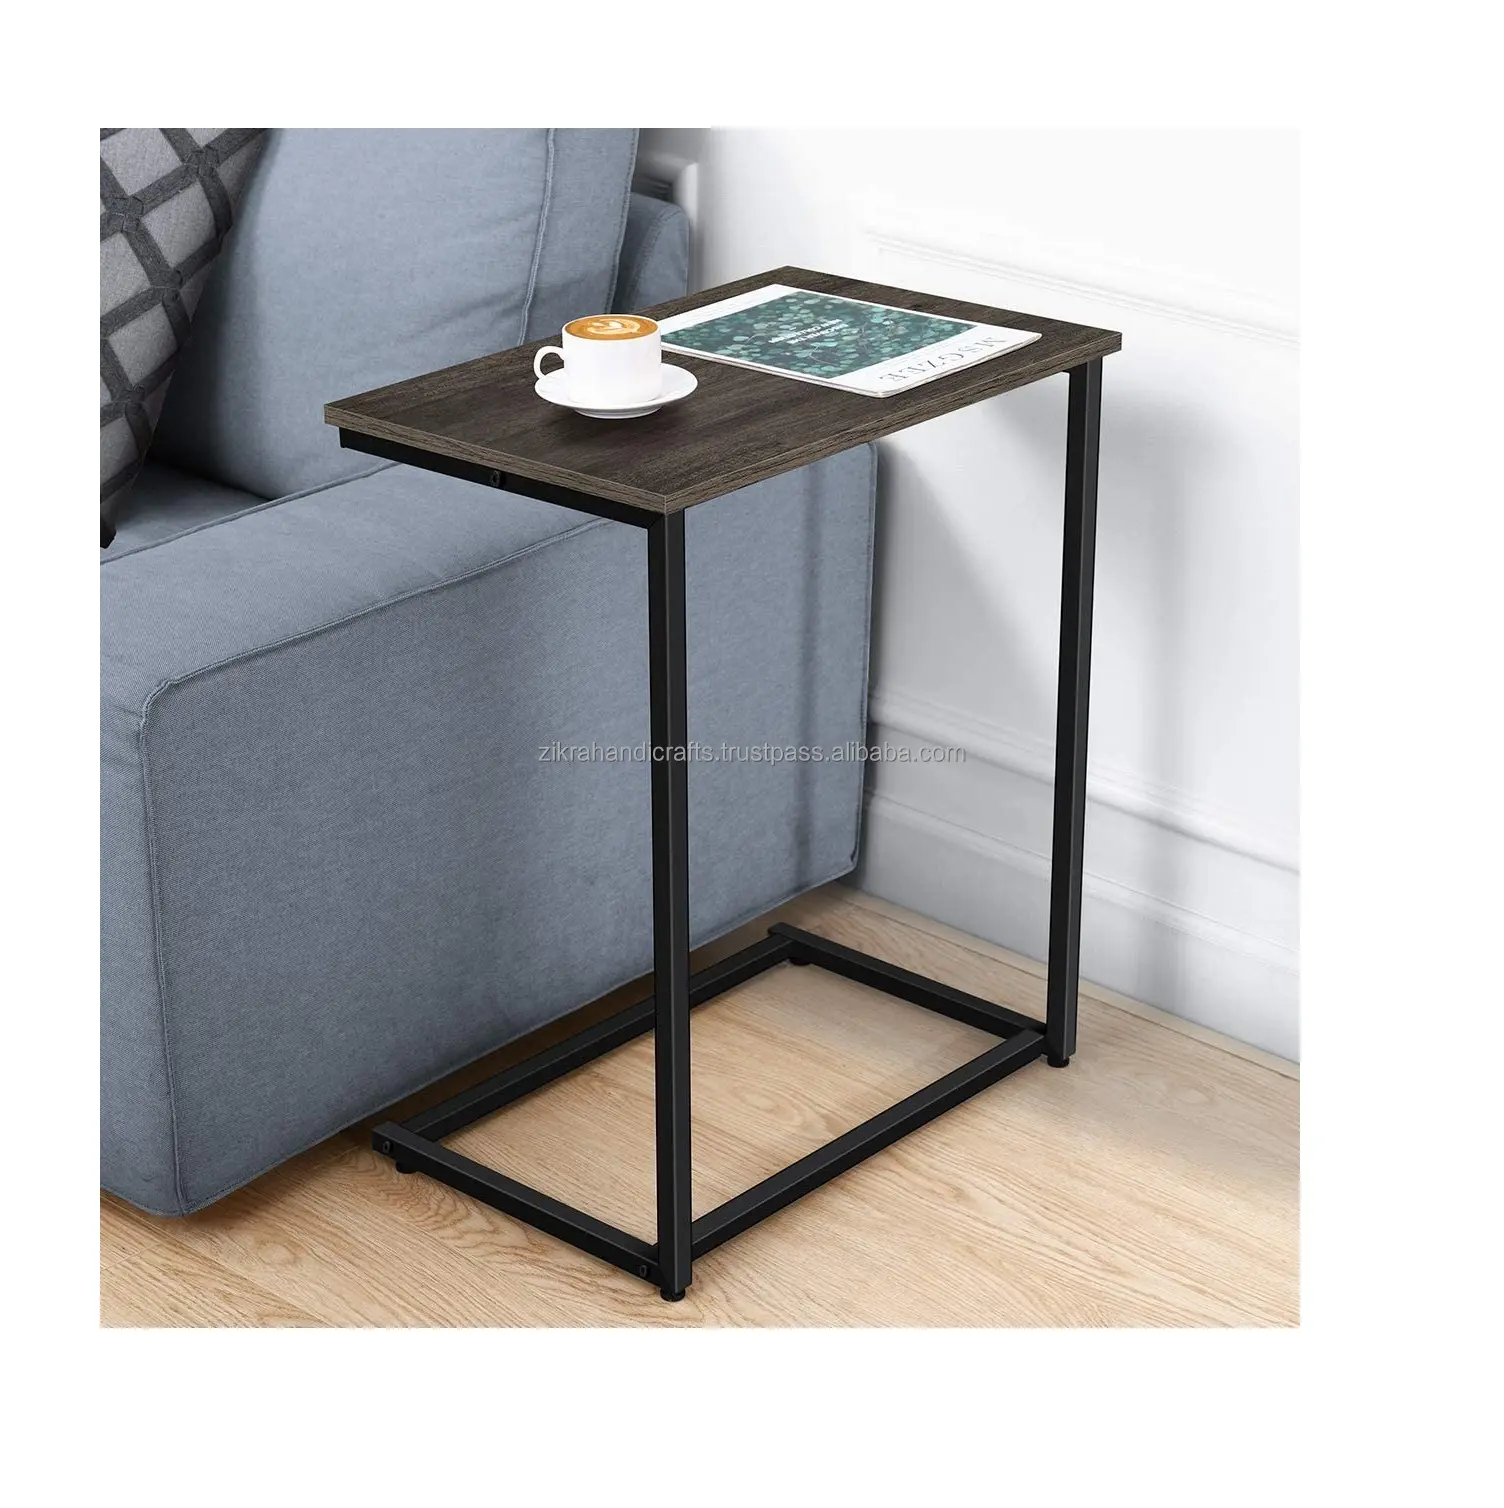 Sıcak satış oturma odası mobilya yuvarlak kahve sehpası Metal çerçeve ahşap üst yeni tasarım siyah sehpa Modern tasarım